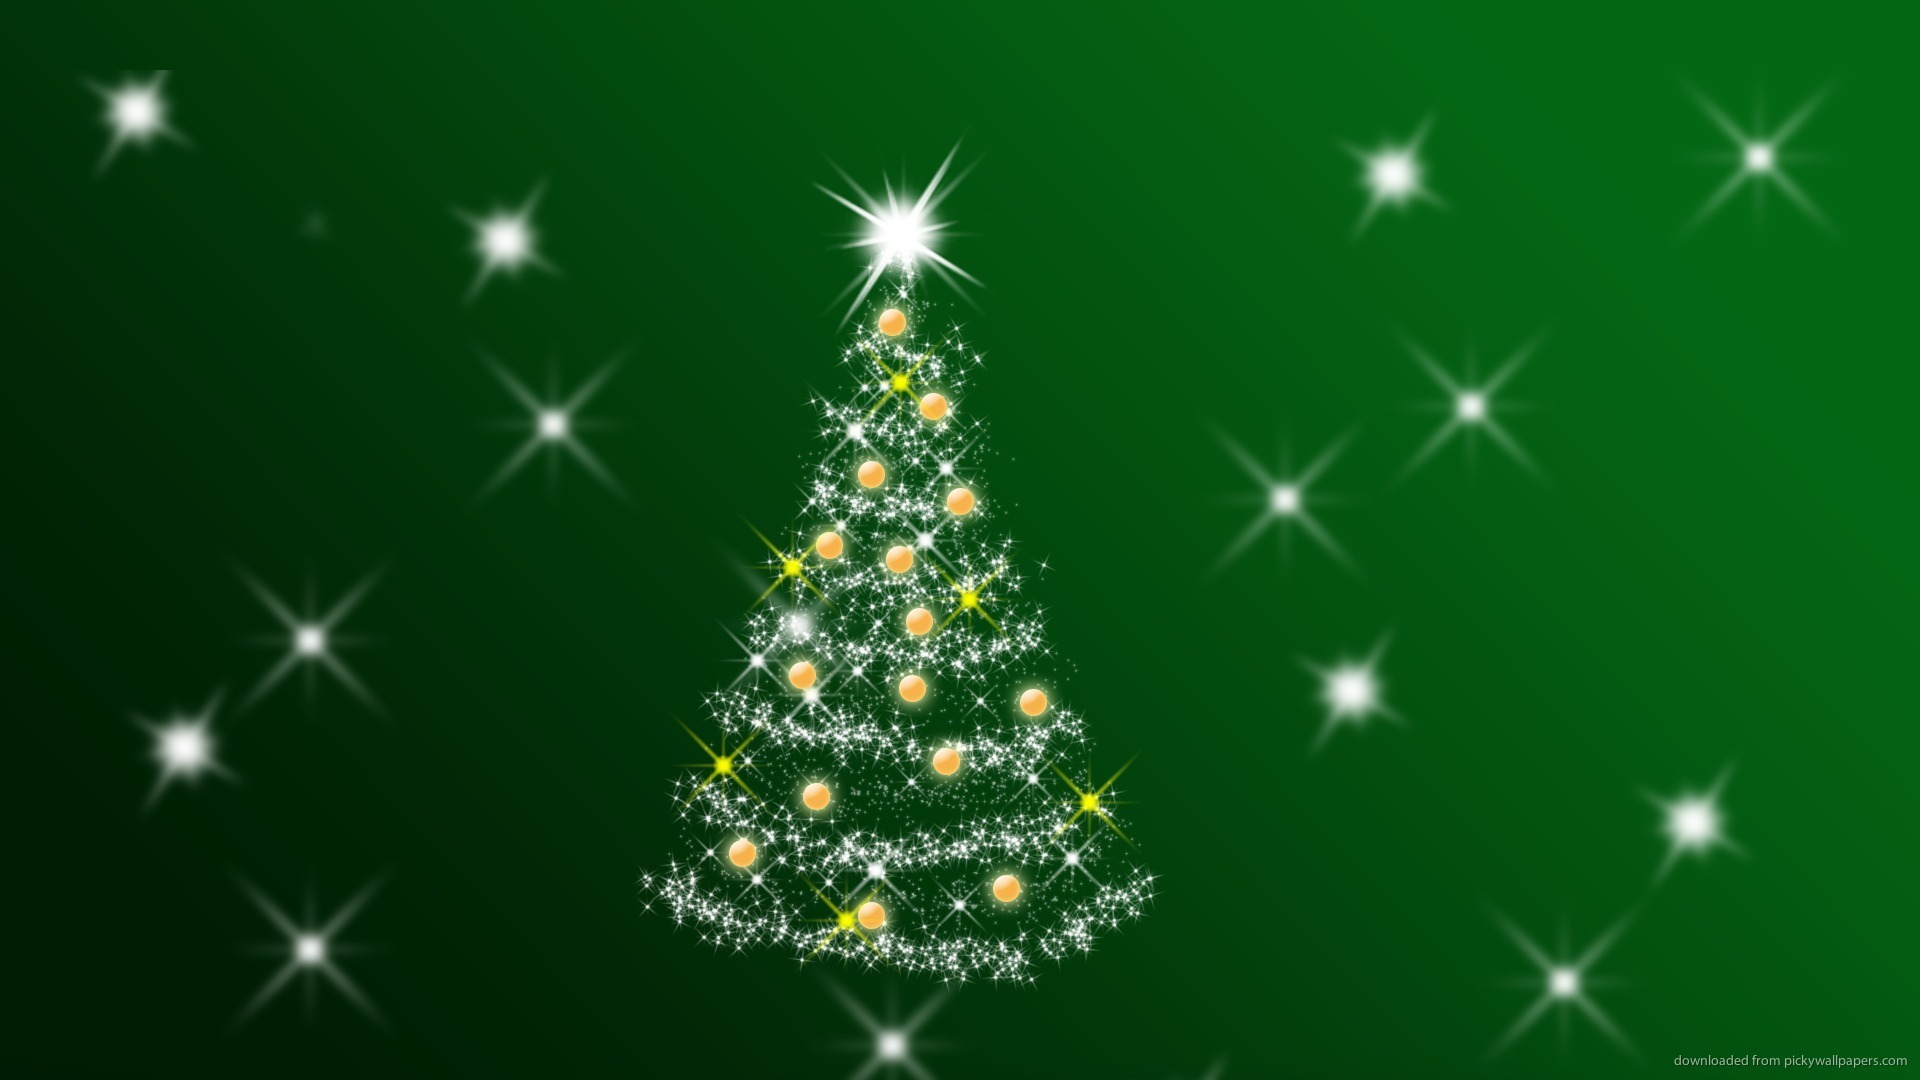 Скачать обои бесплатно Рождество (Christmas Xmas), Фон, Новый Год (New Year) картинка на рабочий стол ПК